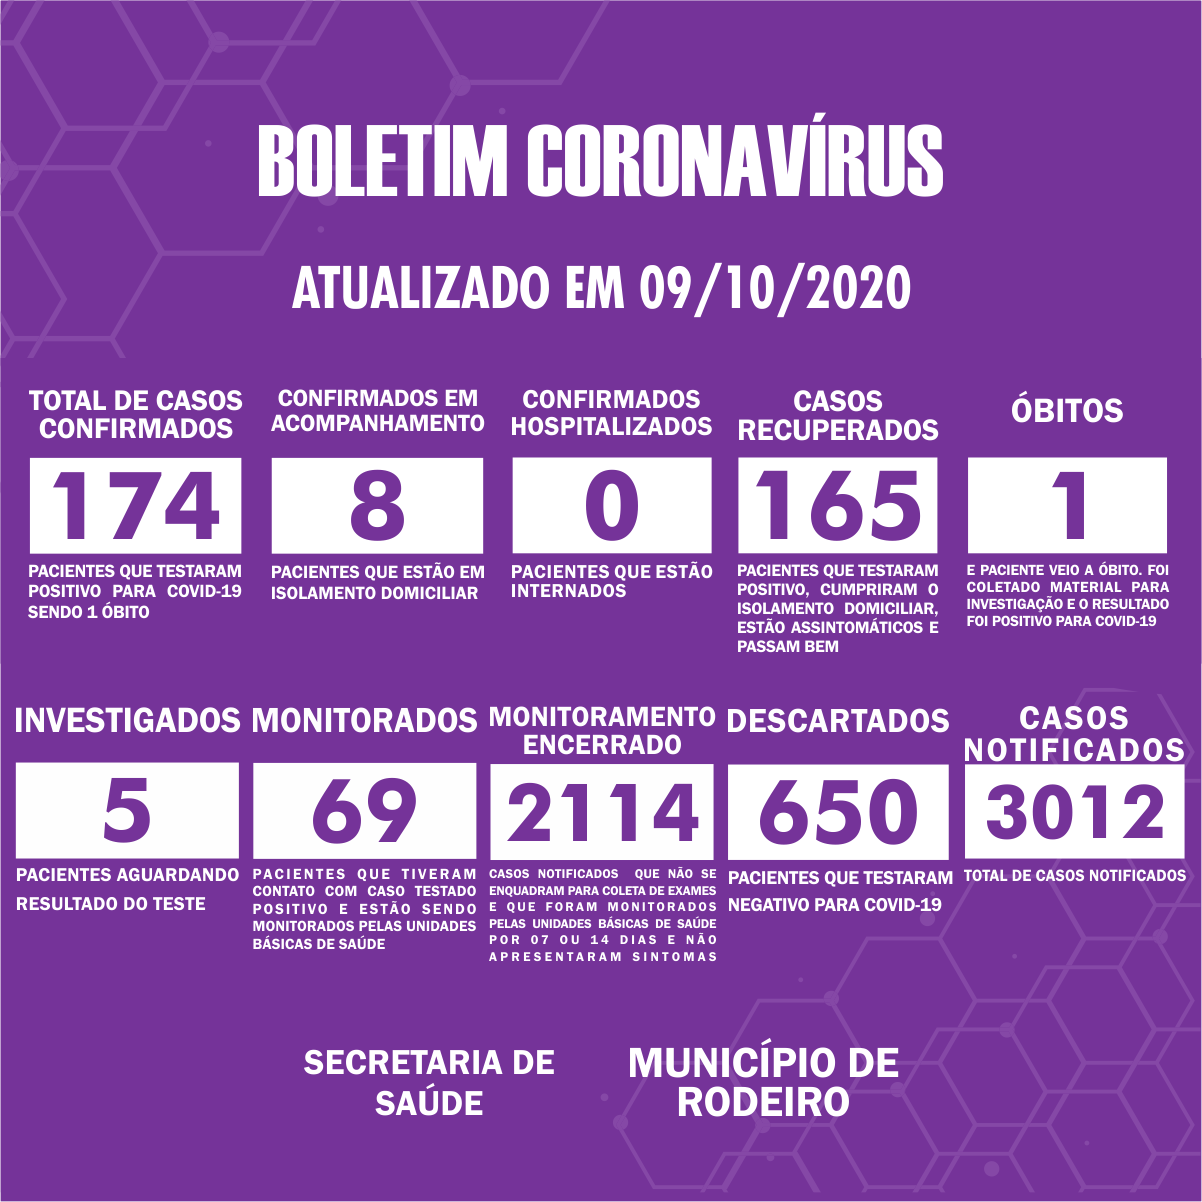 Boletim Epidemiológico do Município de Rodeiro sobre coronavírus, atualizado em 09/10/2020